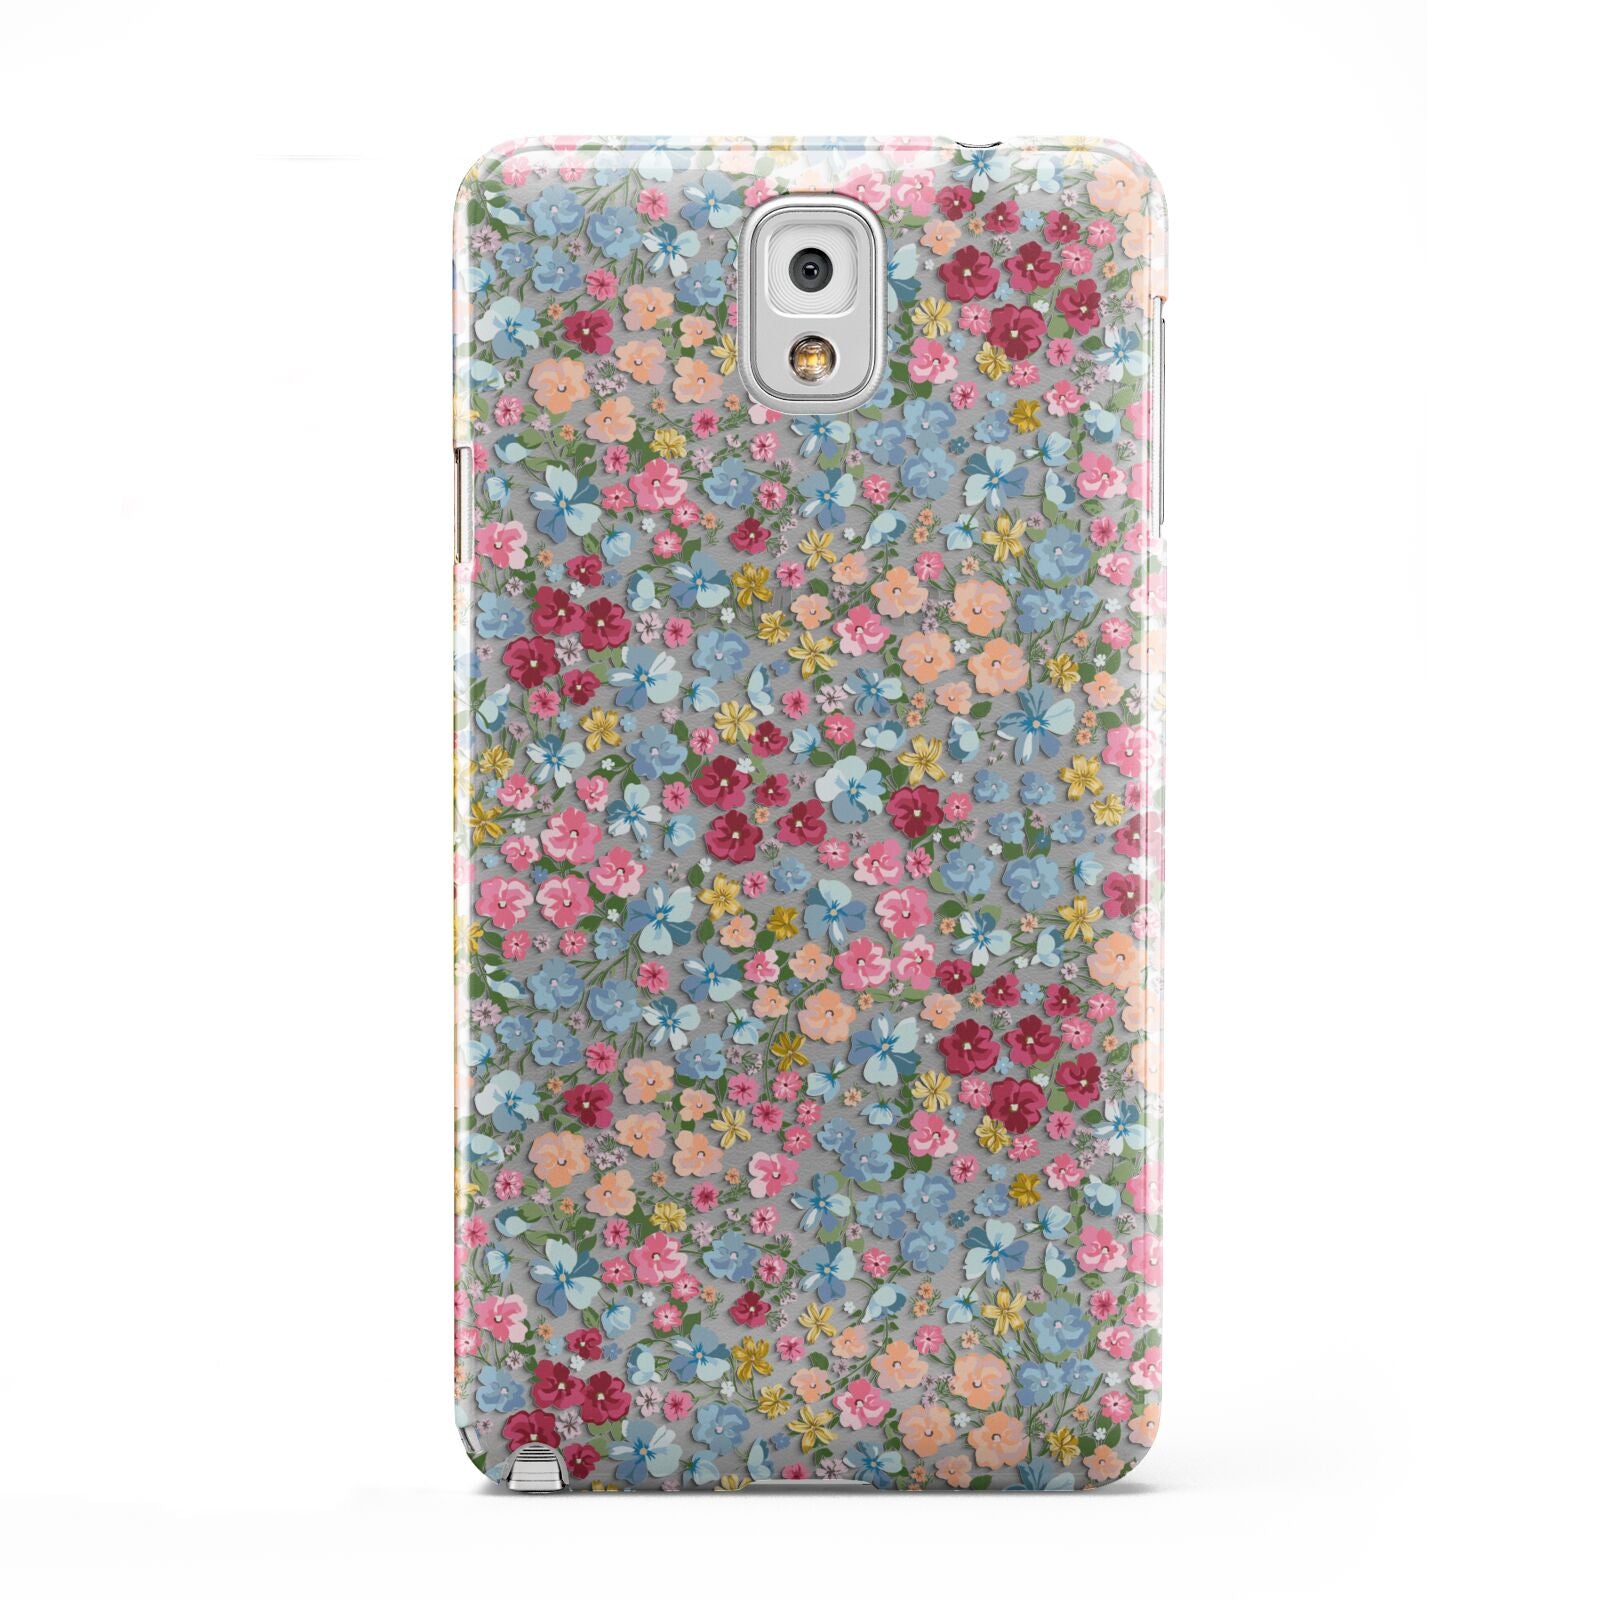 Floral Meadow Samsung Galaxy Note 3 Case